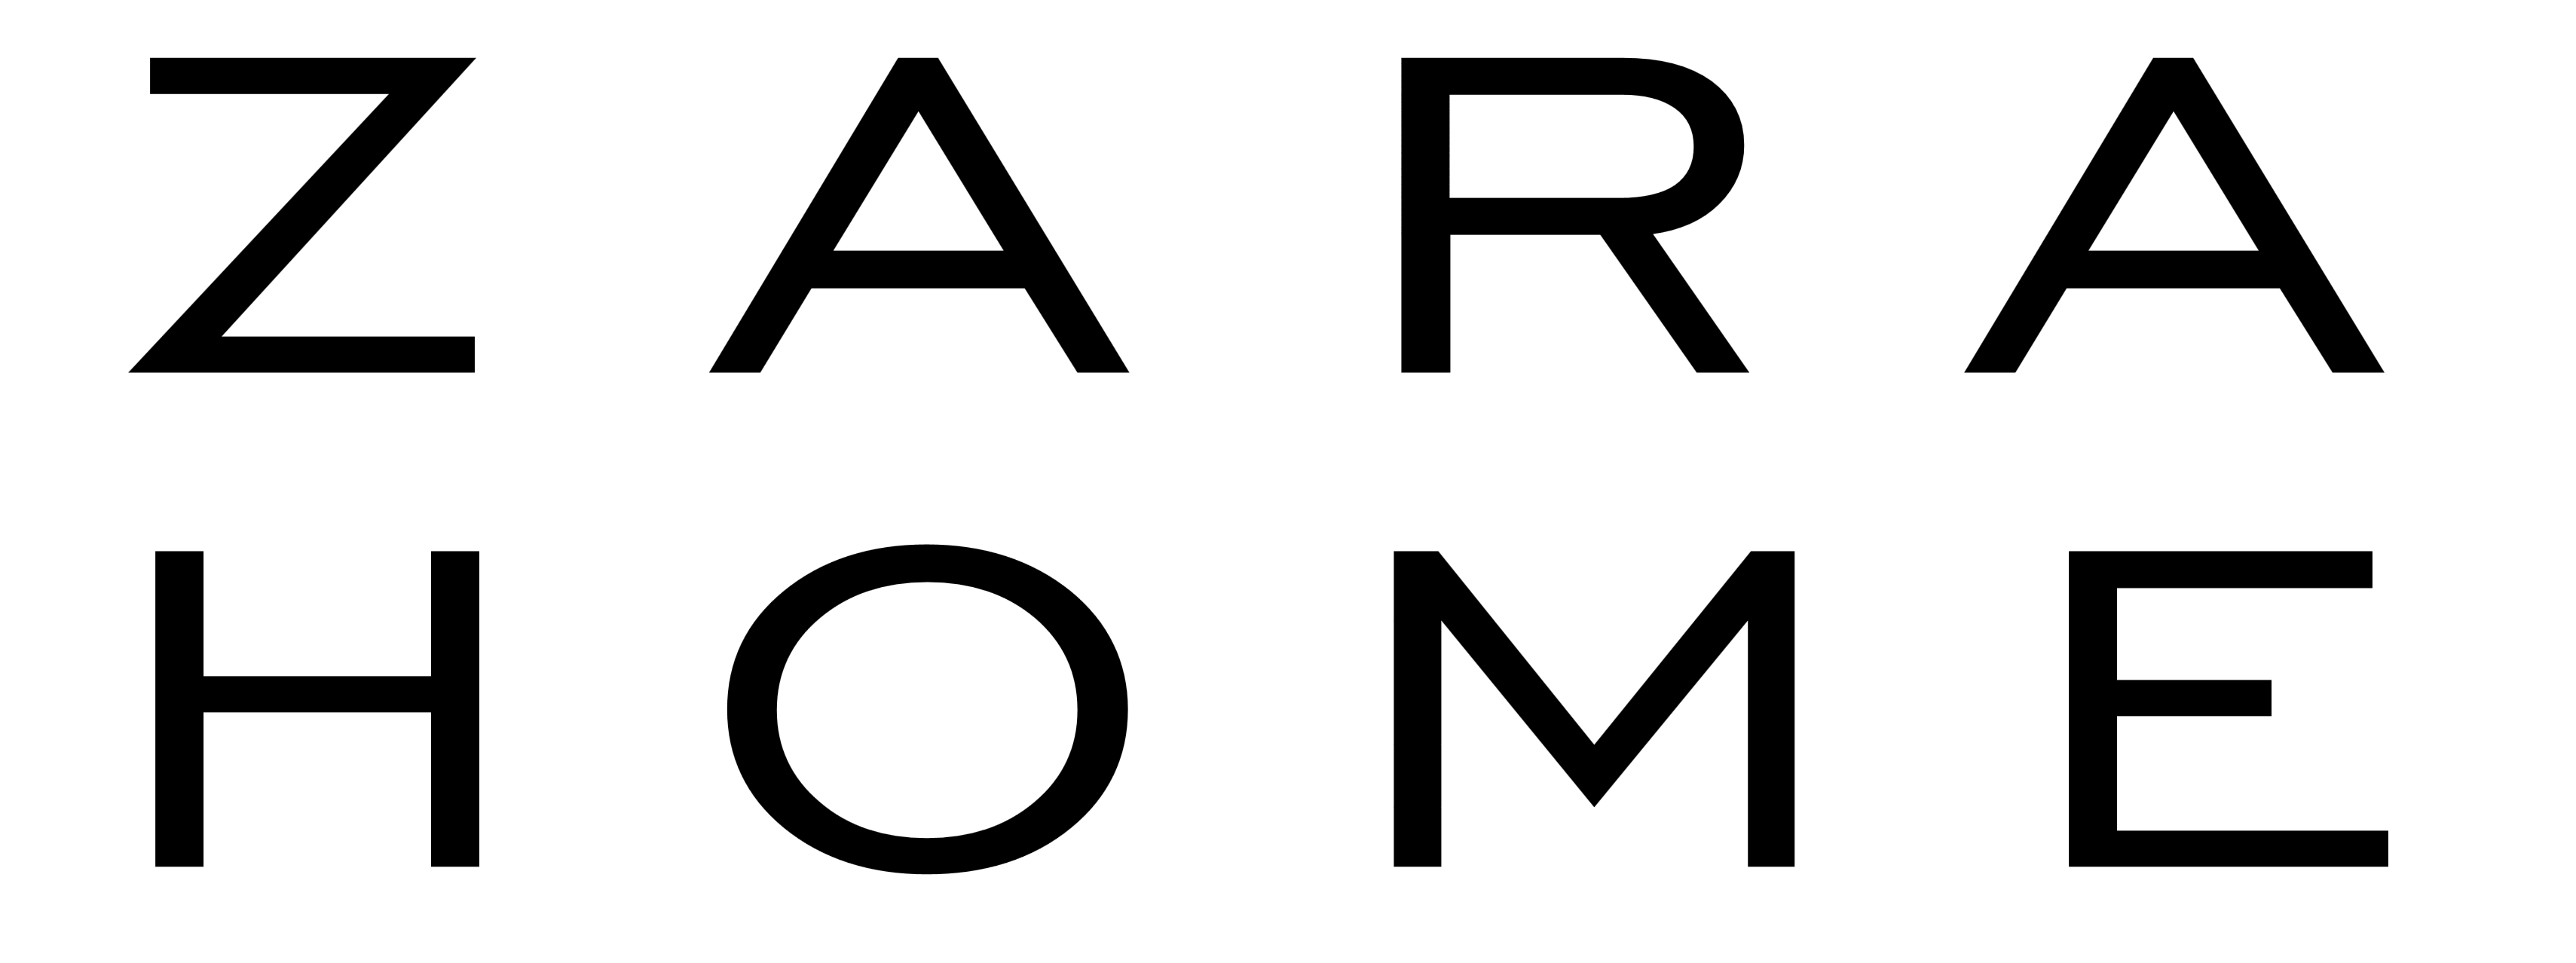 زارا logo PNG صورة شفافة